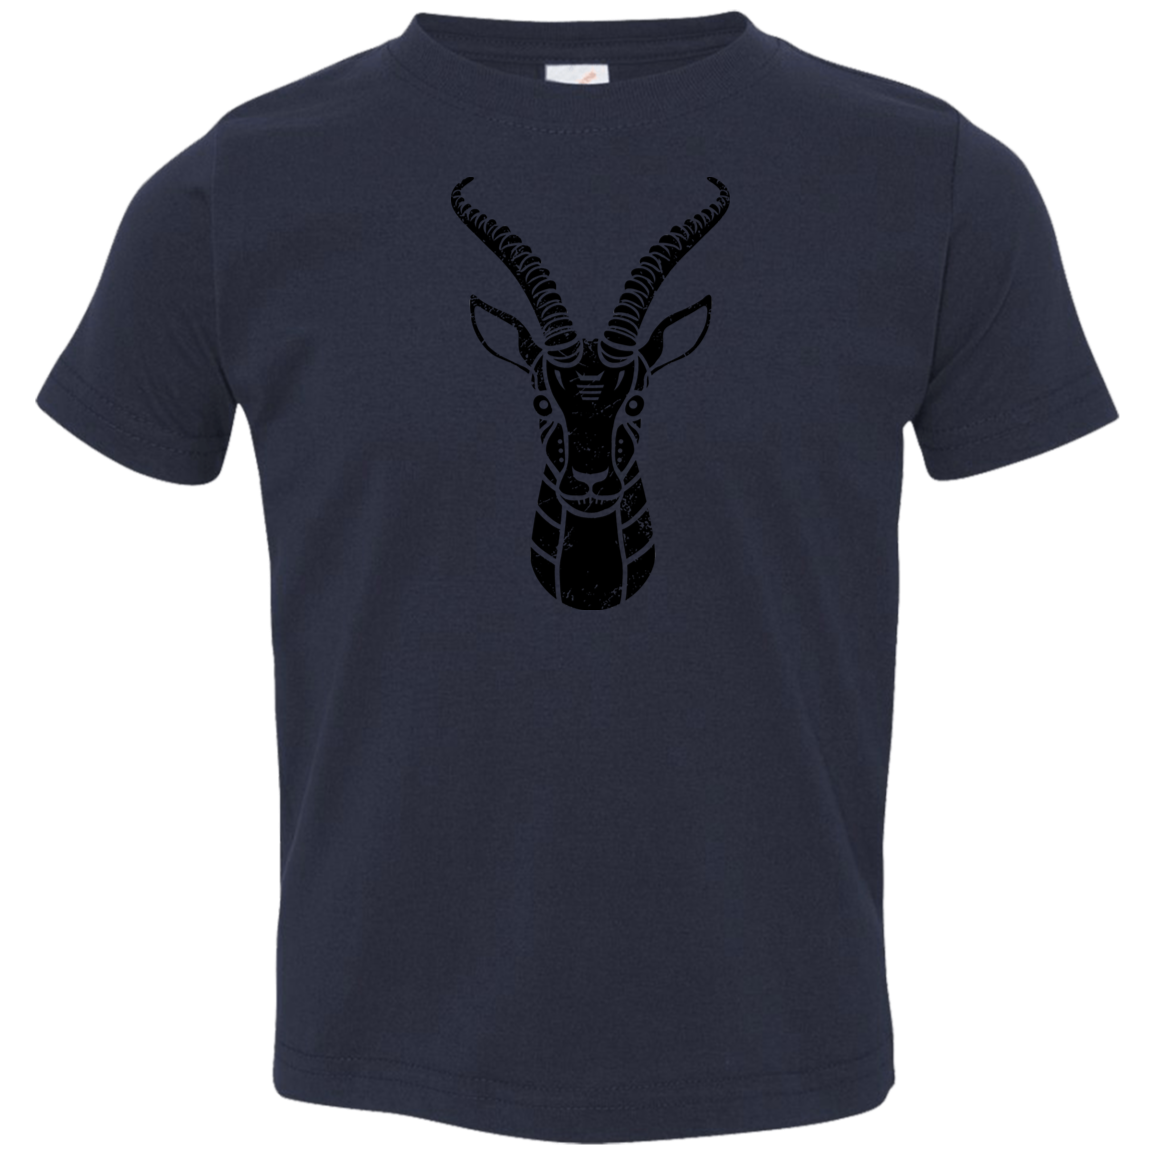 Black Distressed Emblem T-Shirt for Toddlers (Gazelle/Grace)